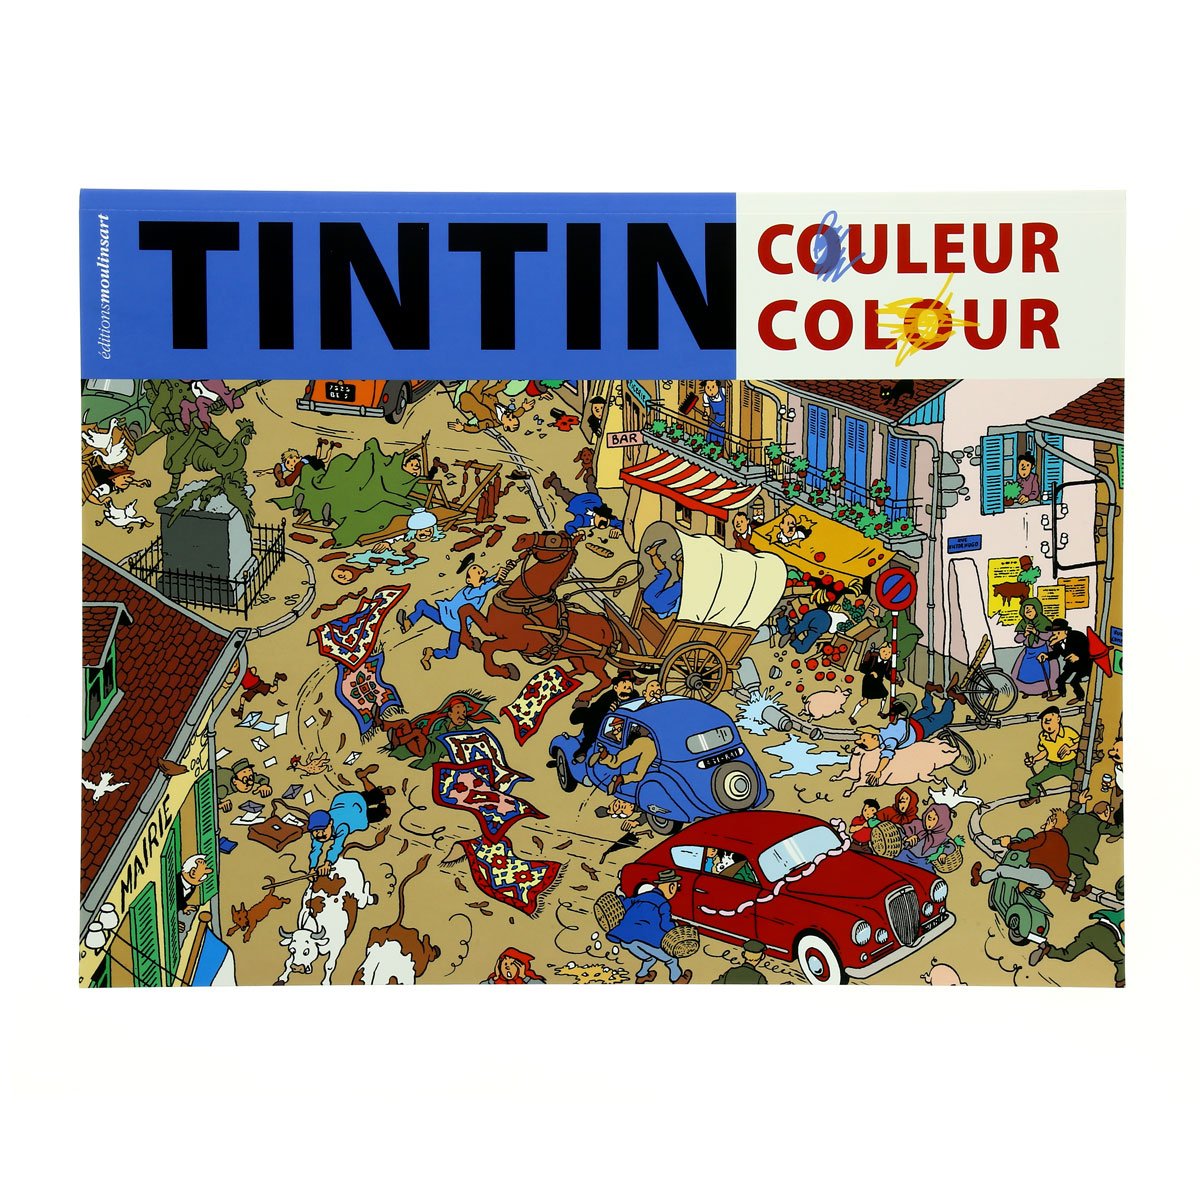 Tintin colouring book